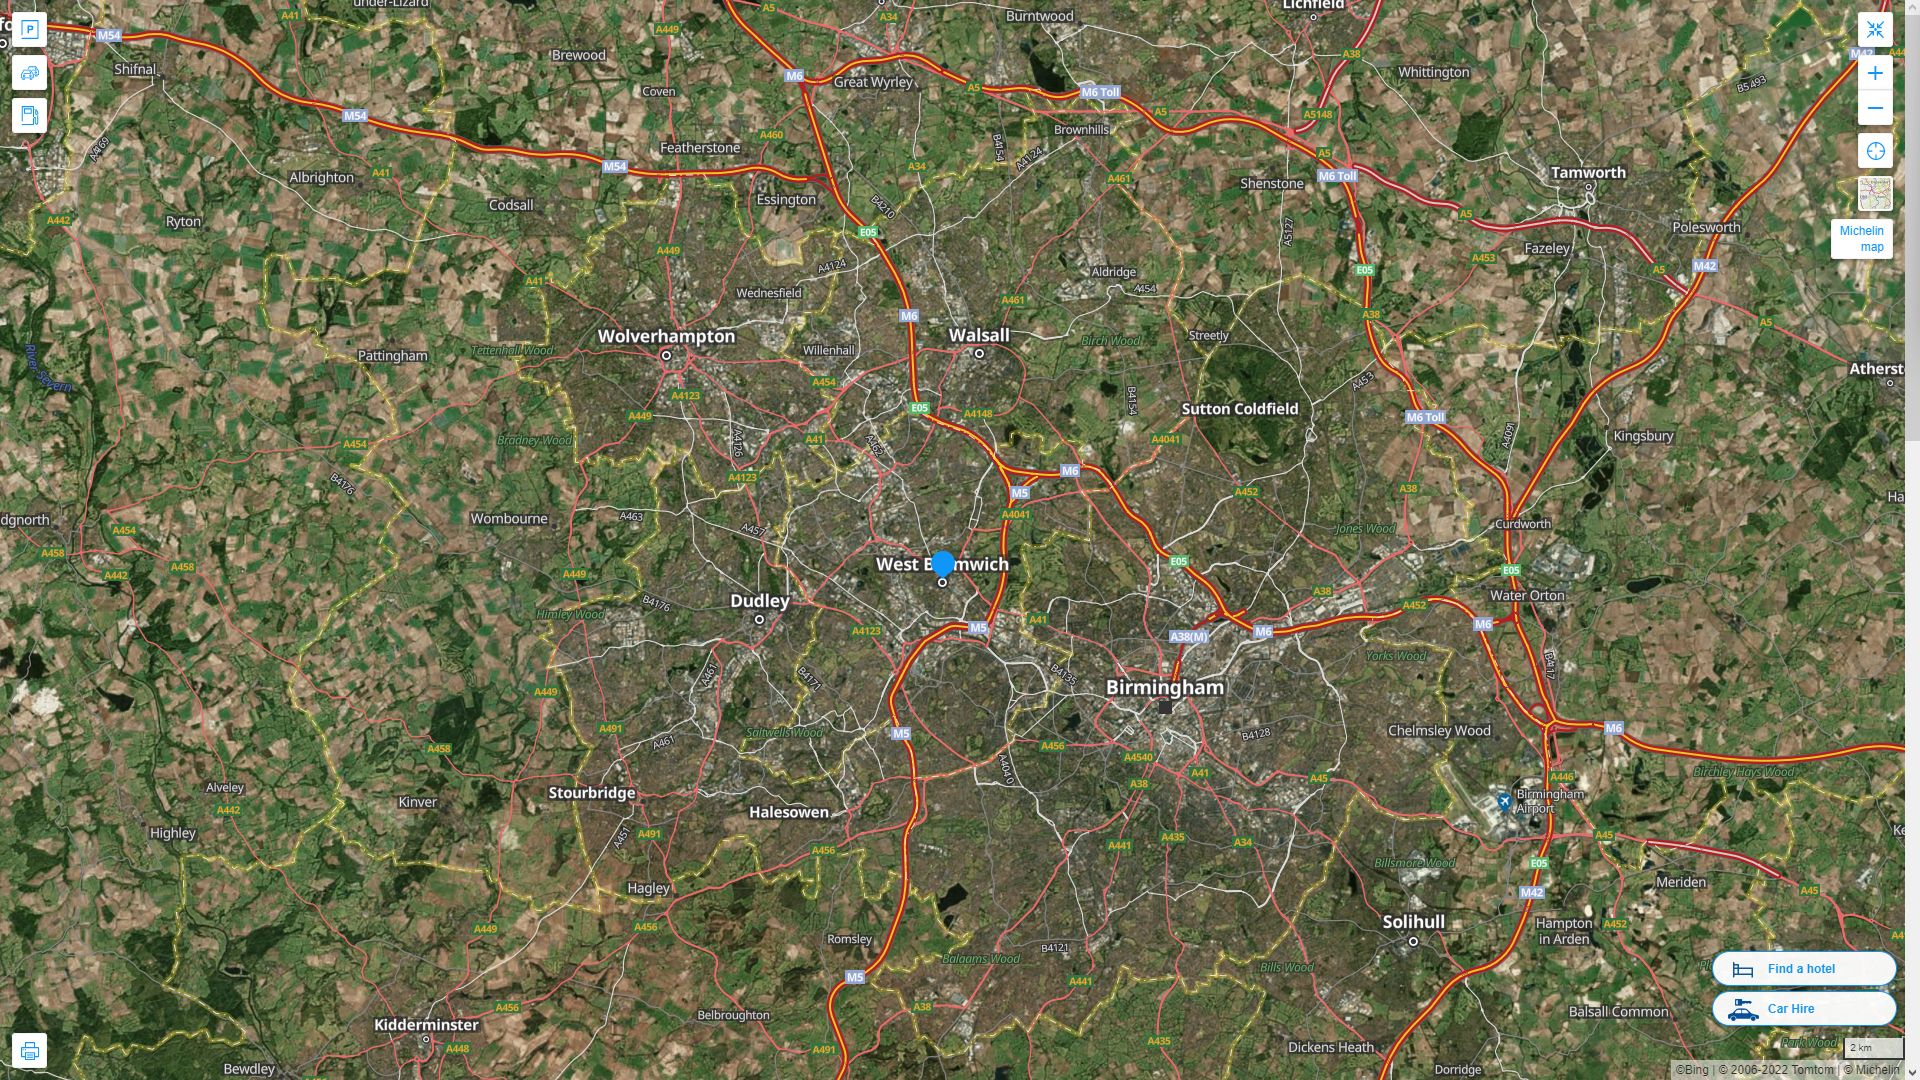 West Bromwich Royaume Uni Autoroute et carte routiere avec vue satellite